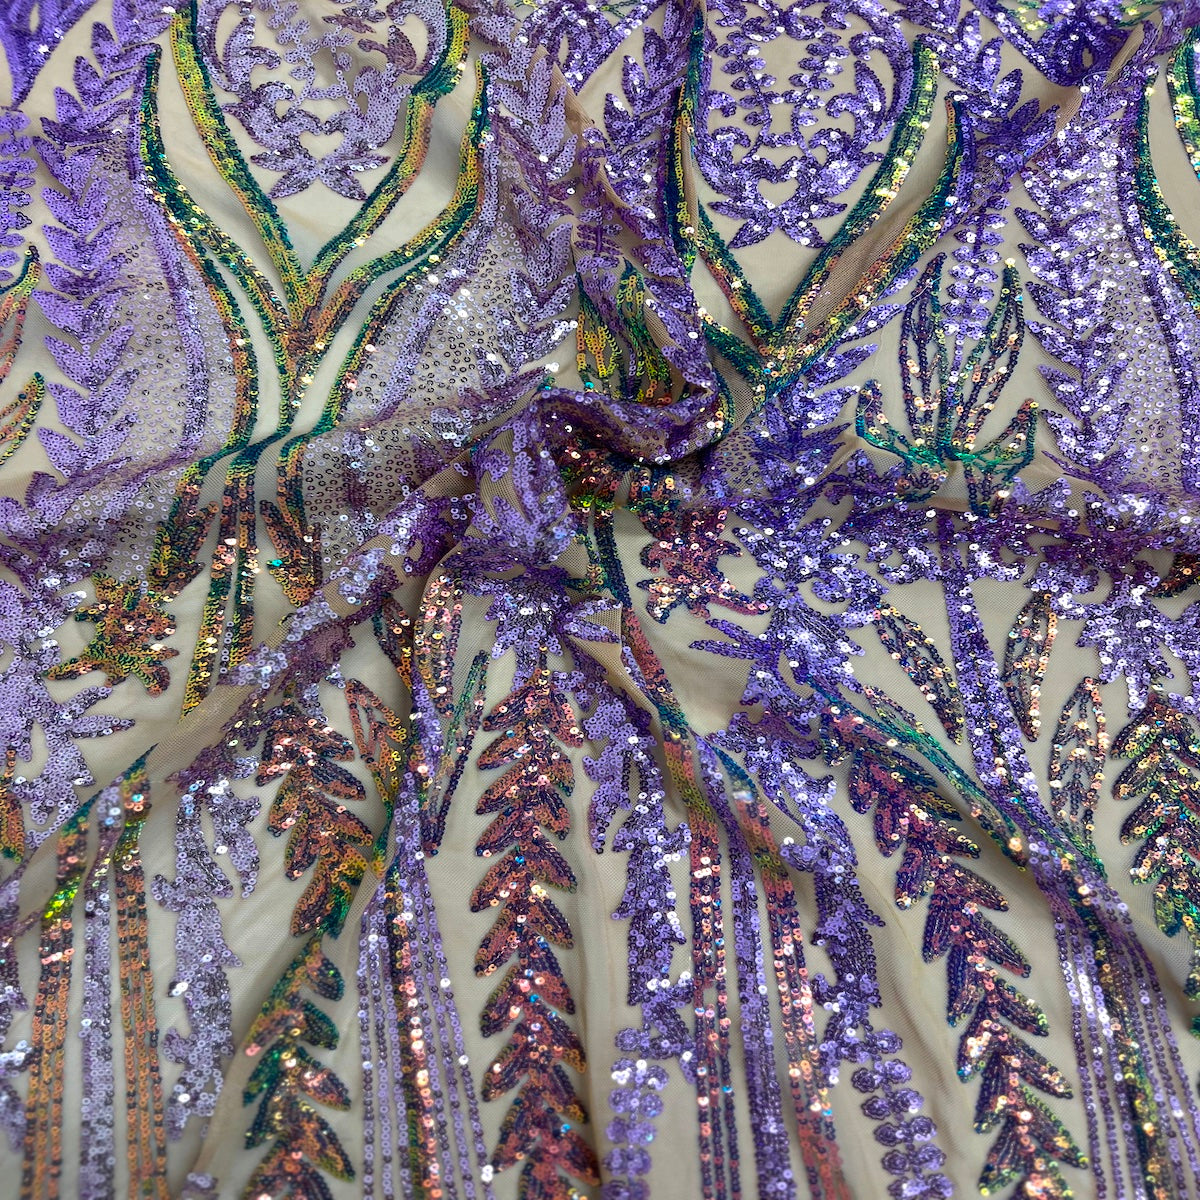 Arcoiris iridiscente | Tela de encaje de lentejuelas damasco Alina lavanda